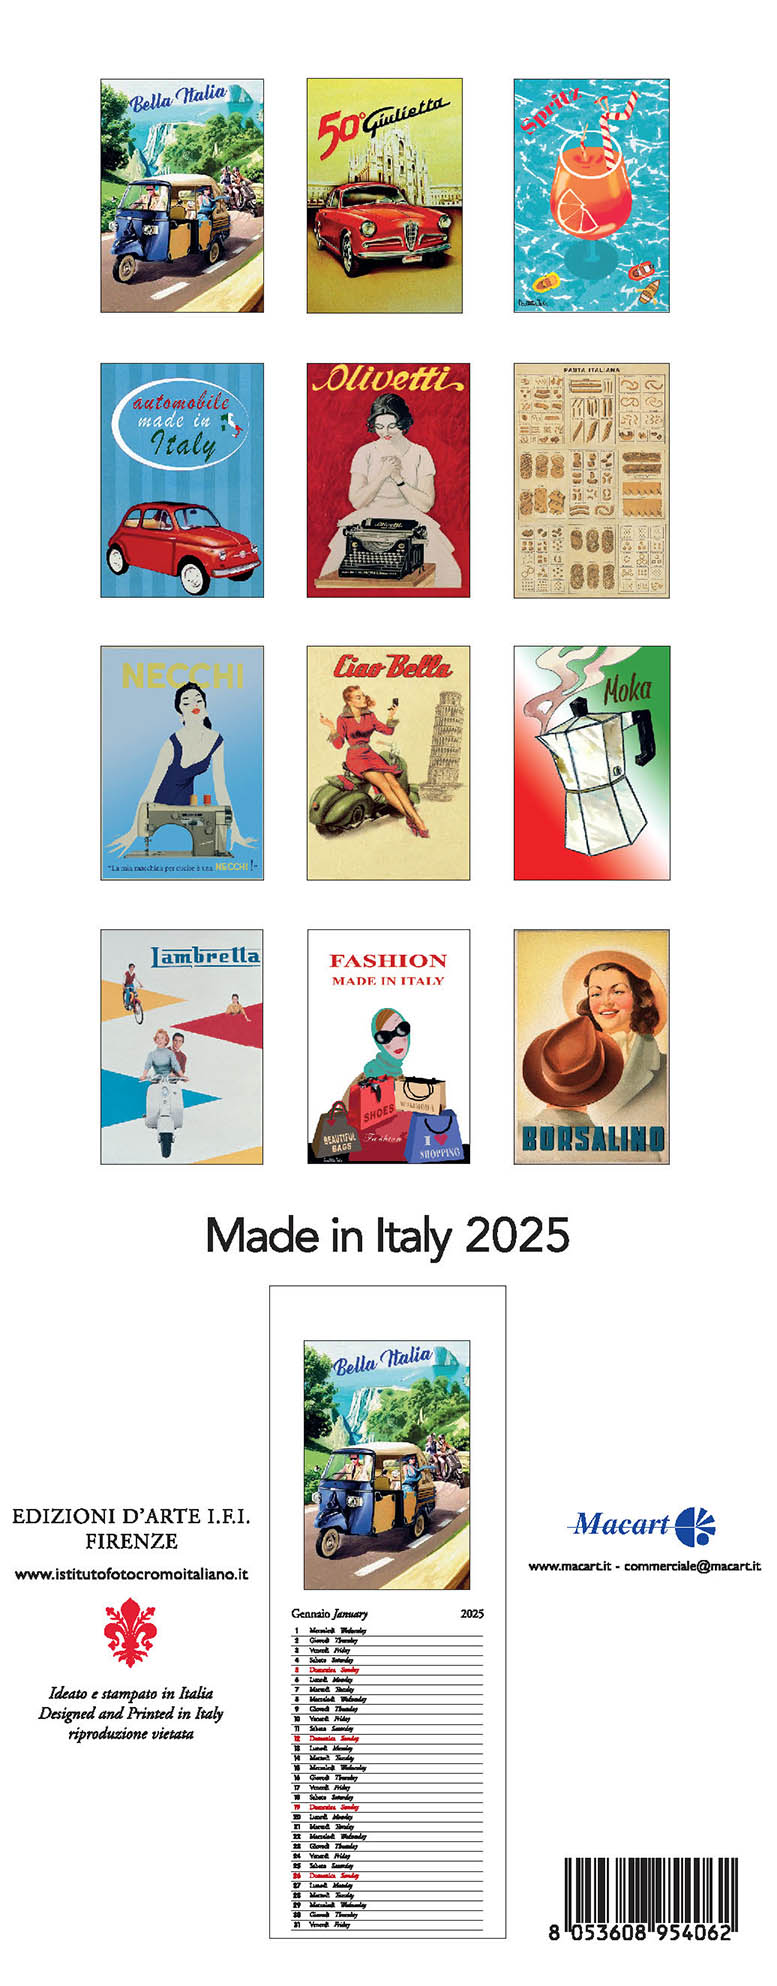 Hergestellt in Italien 2025 